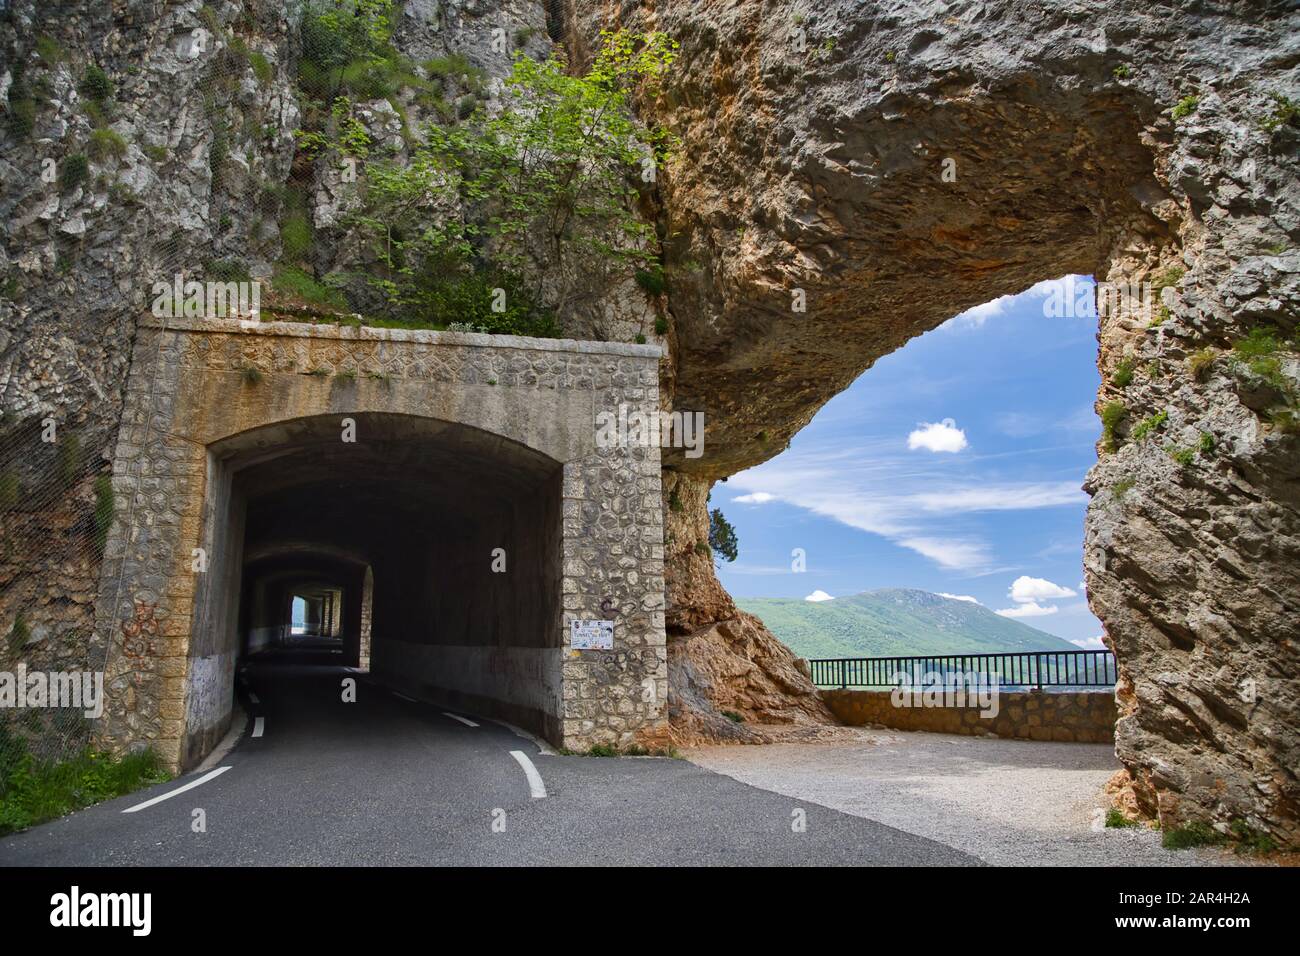 Un tunnel routier et un point de vue sur la gorge du Verdon, département du Var, France Banque D'Images